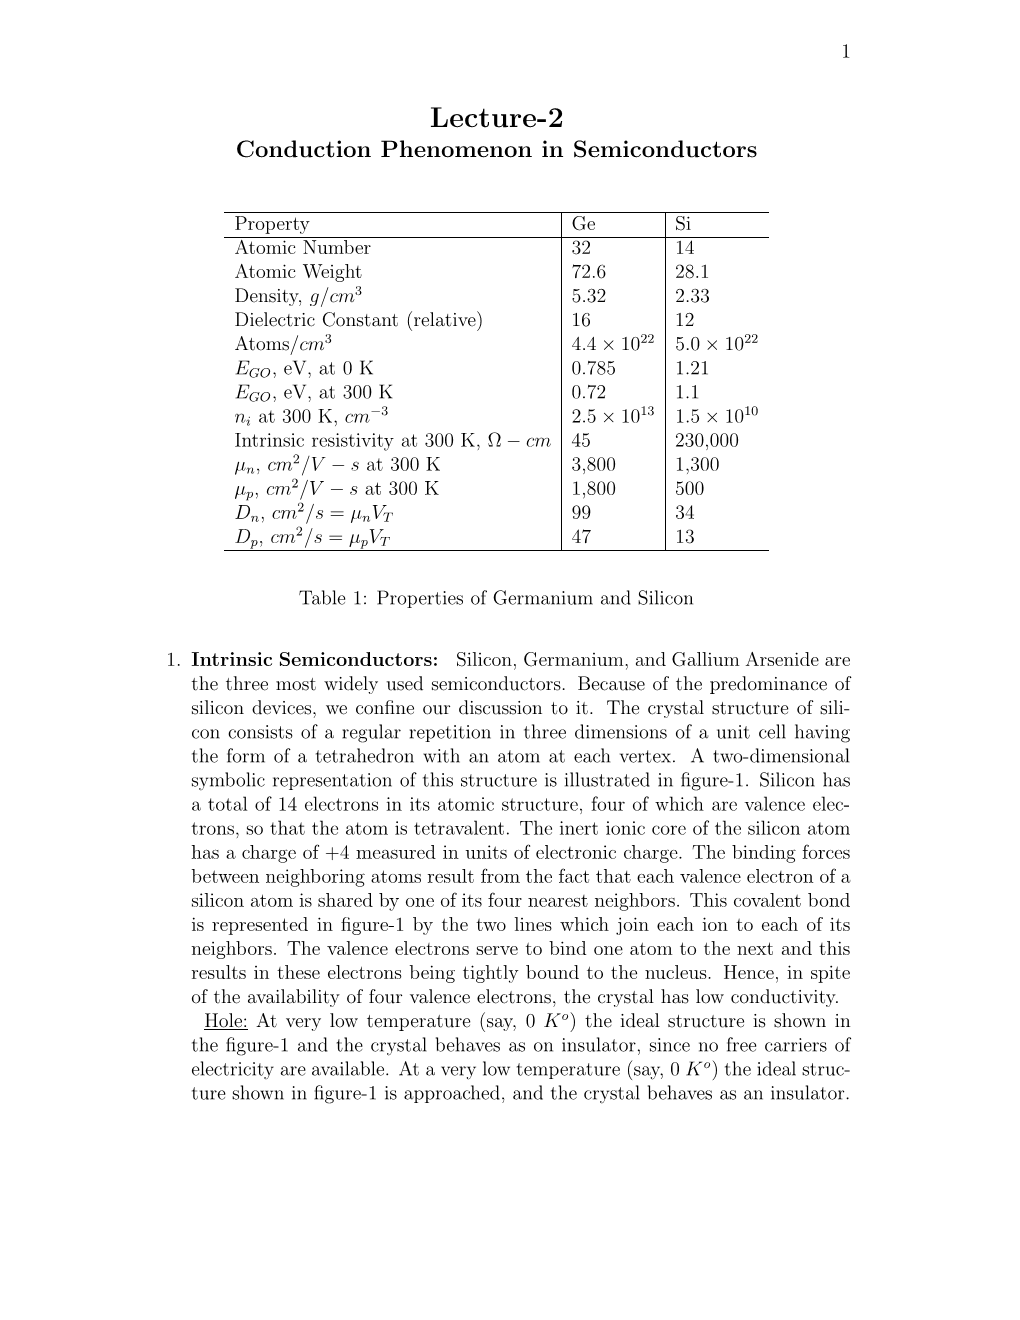 Lecture-2 Conduction Phenomenon in Semiconductors